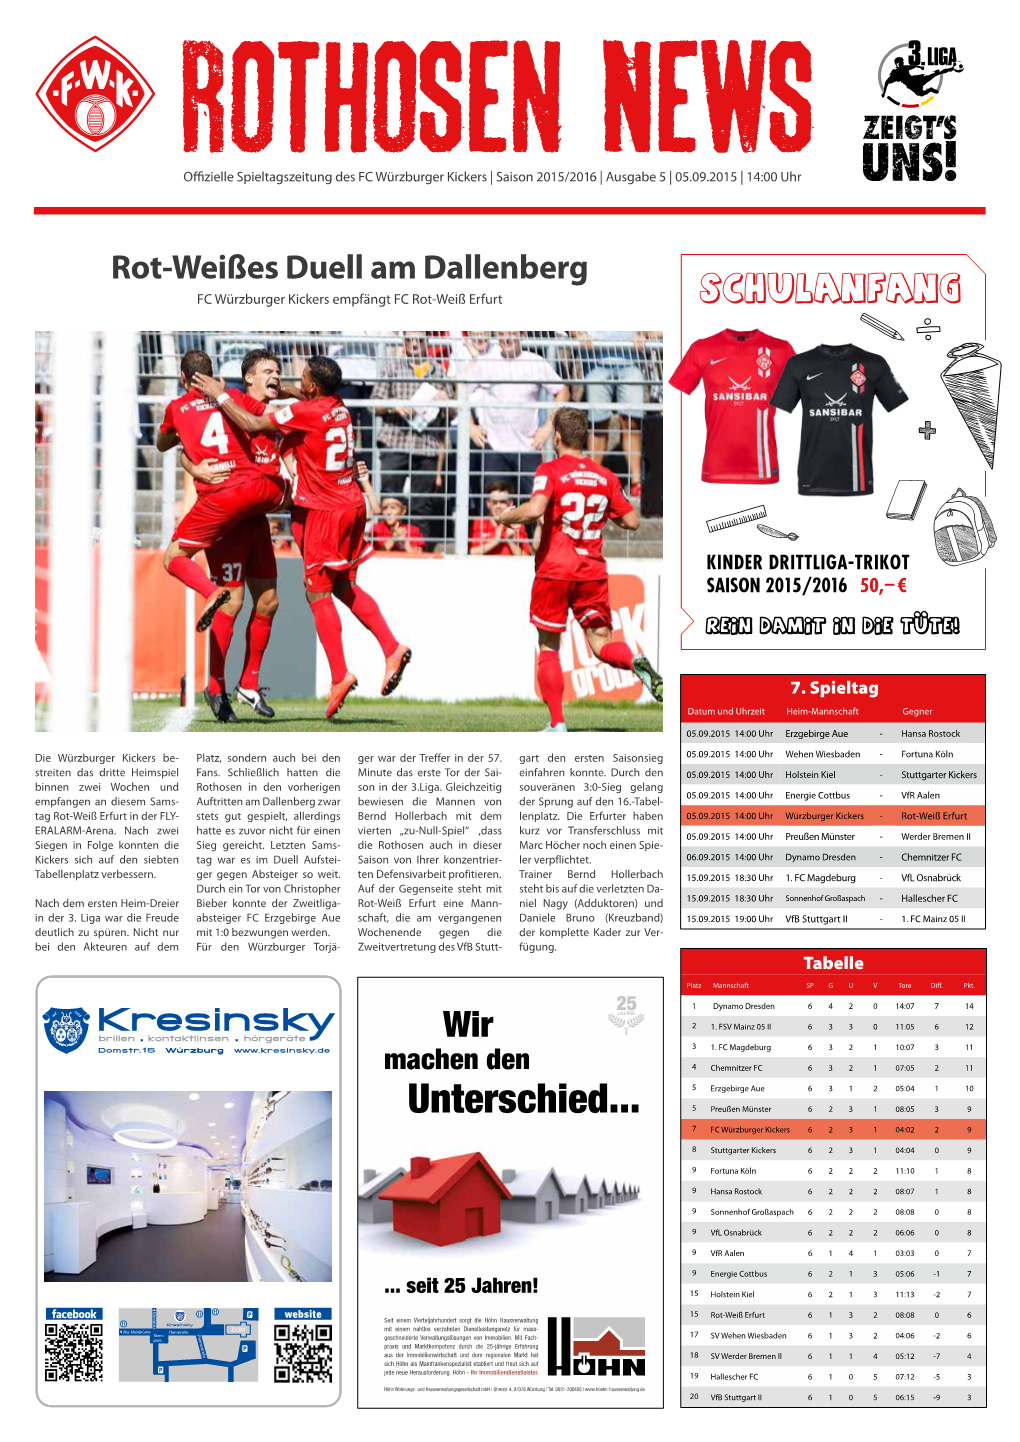 Rothosen News Ausgabe 5 / Saison 2015/16 / 3. Liga